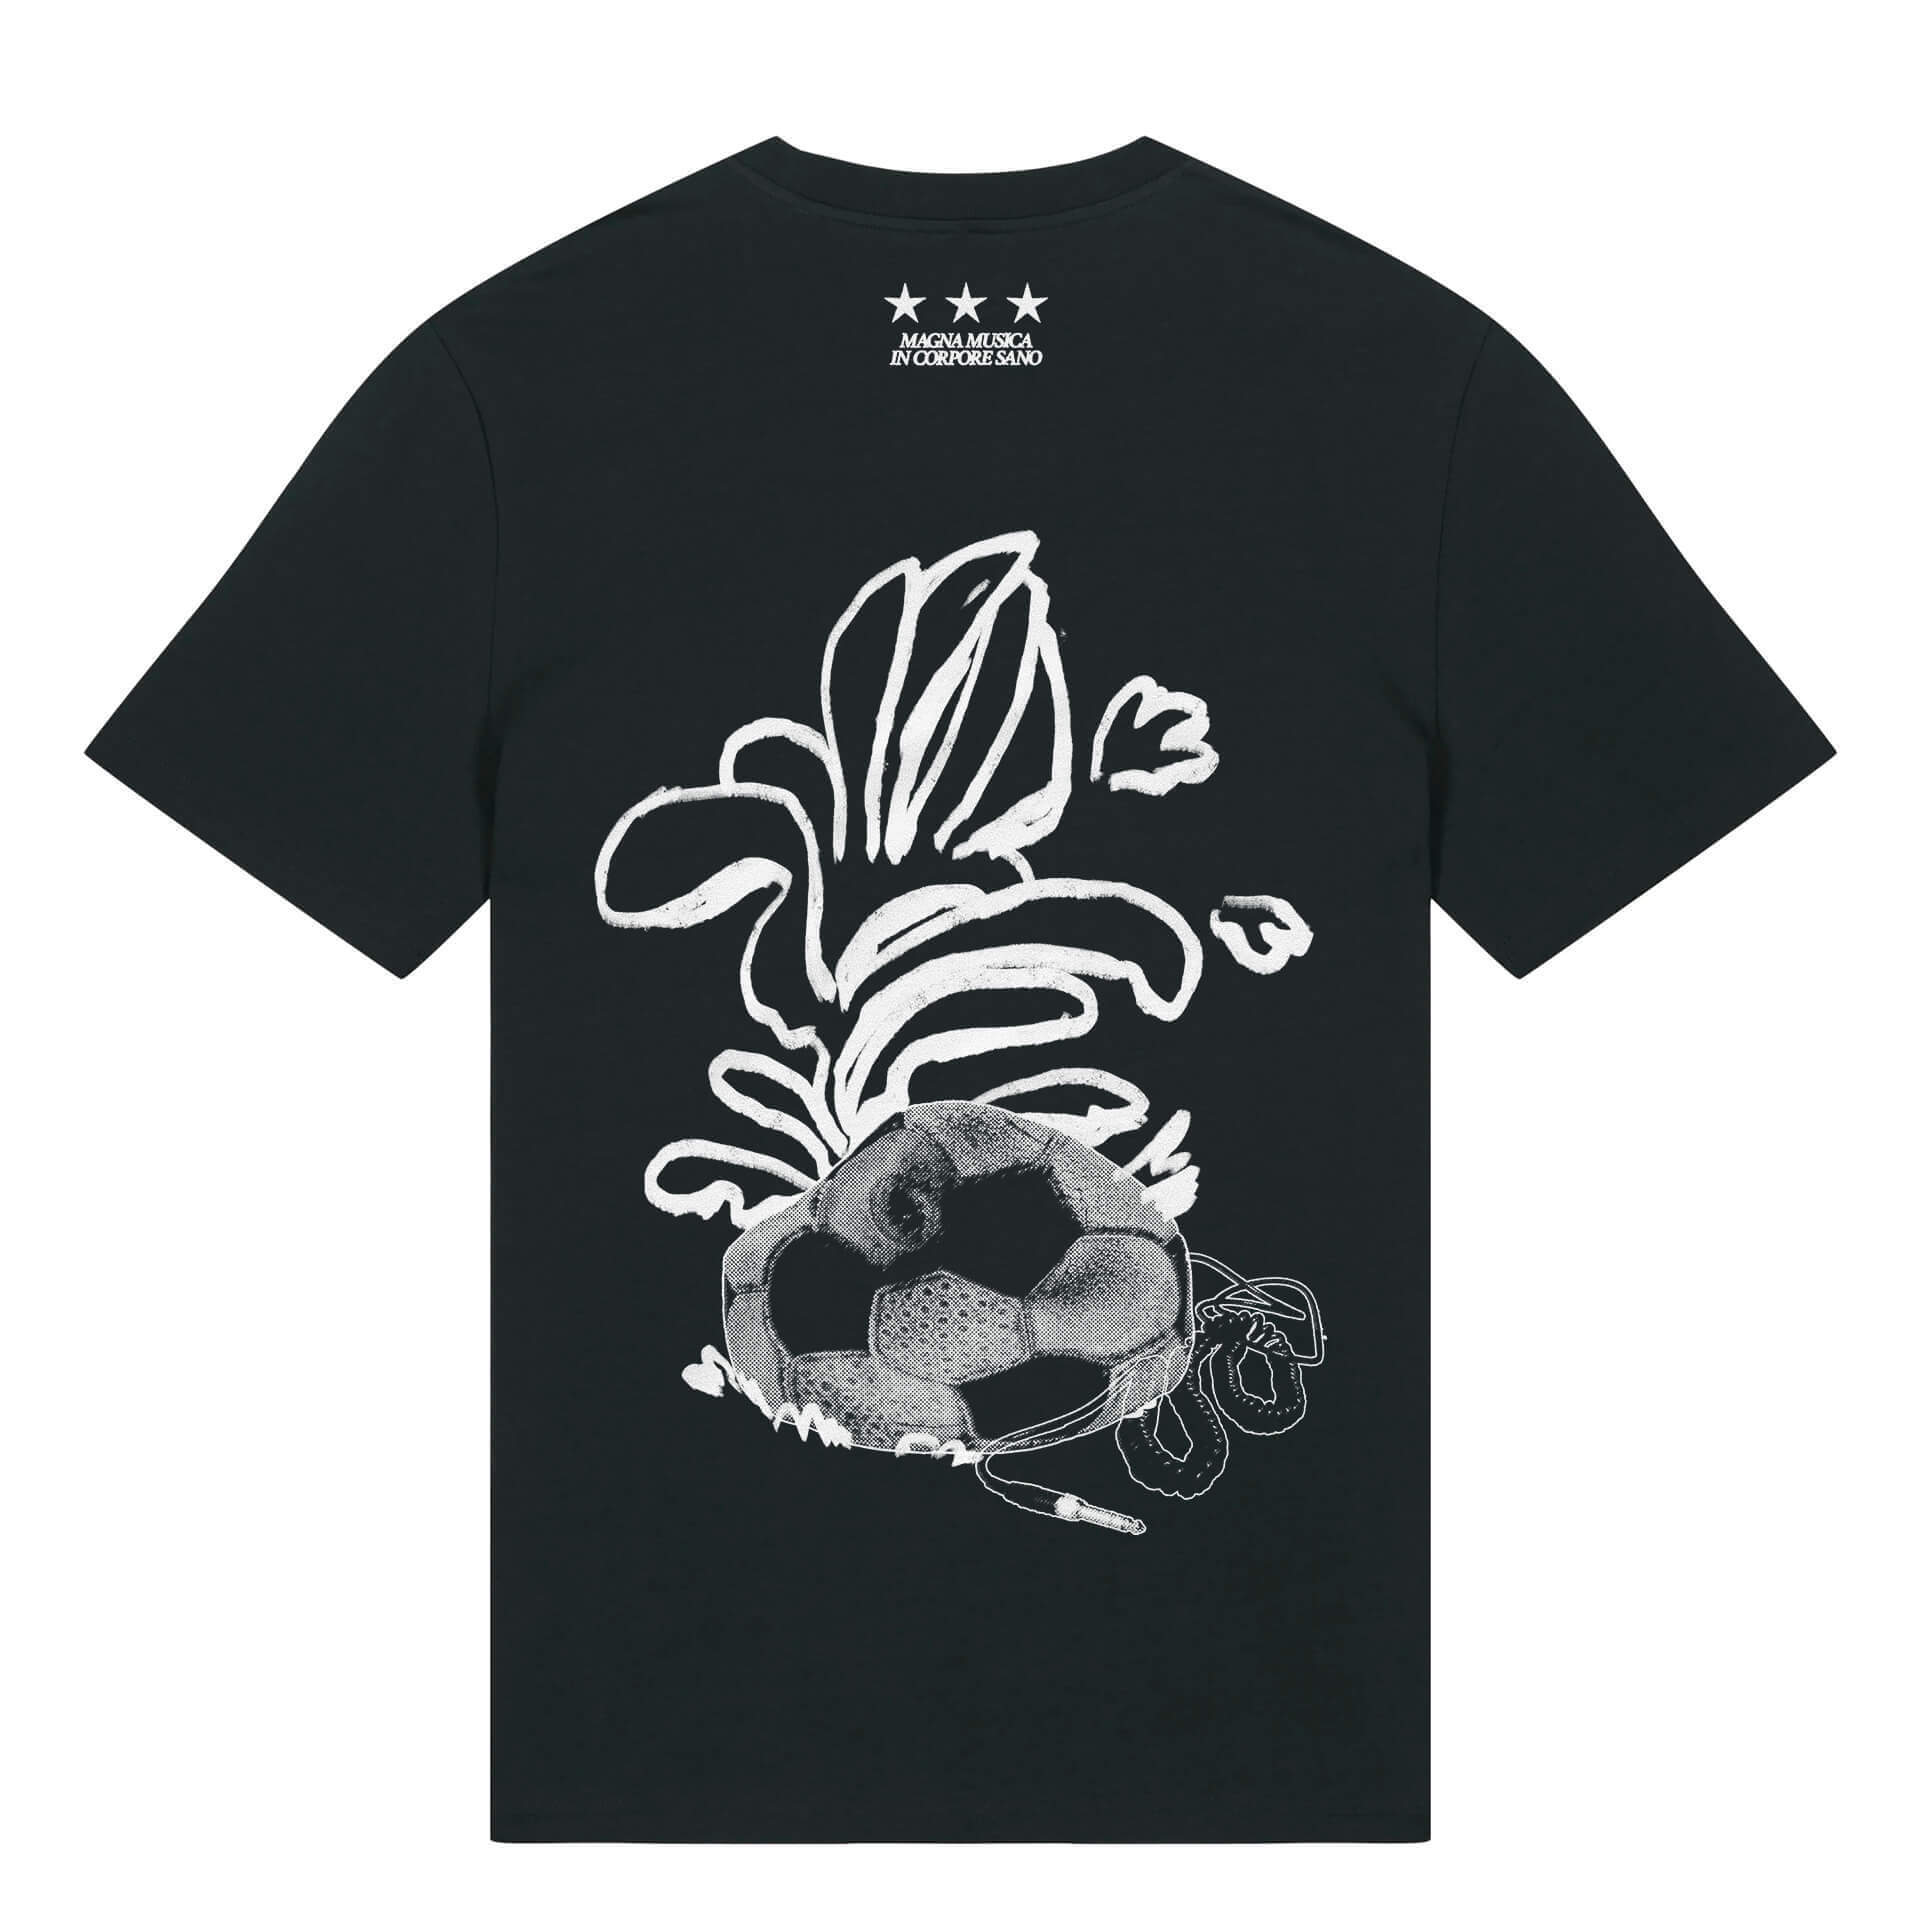 RSCA x Couleur Café T-shirt is-hover